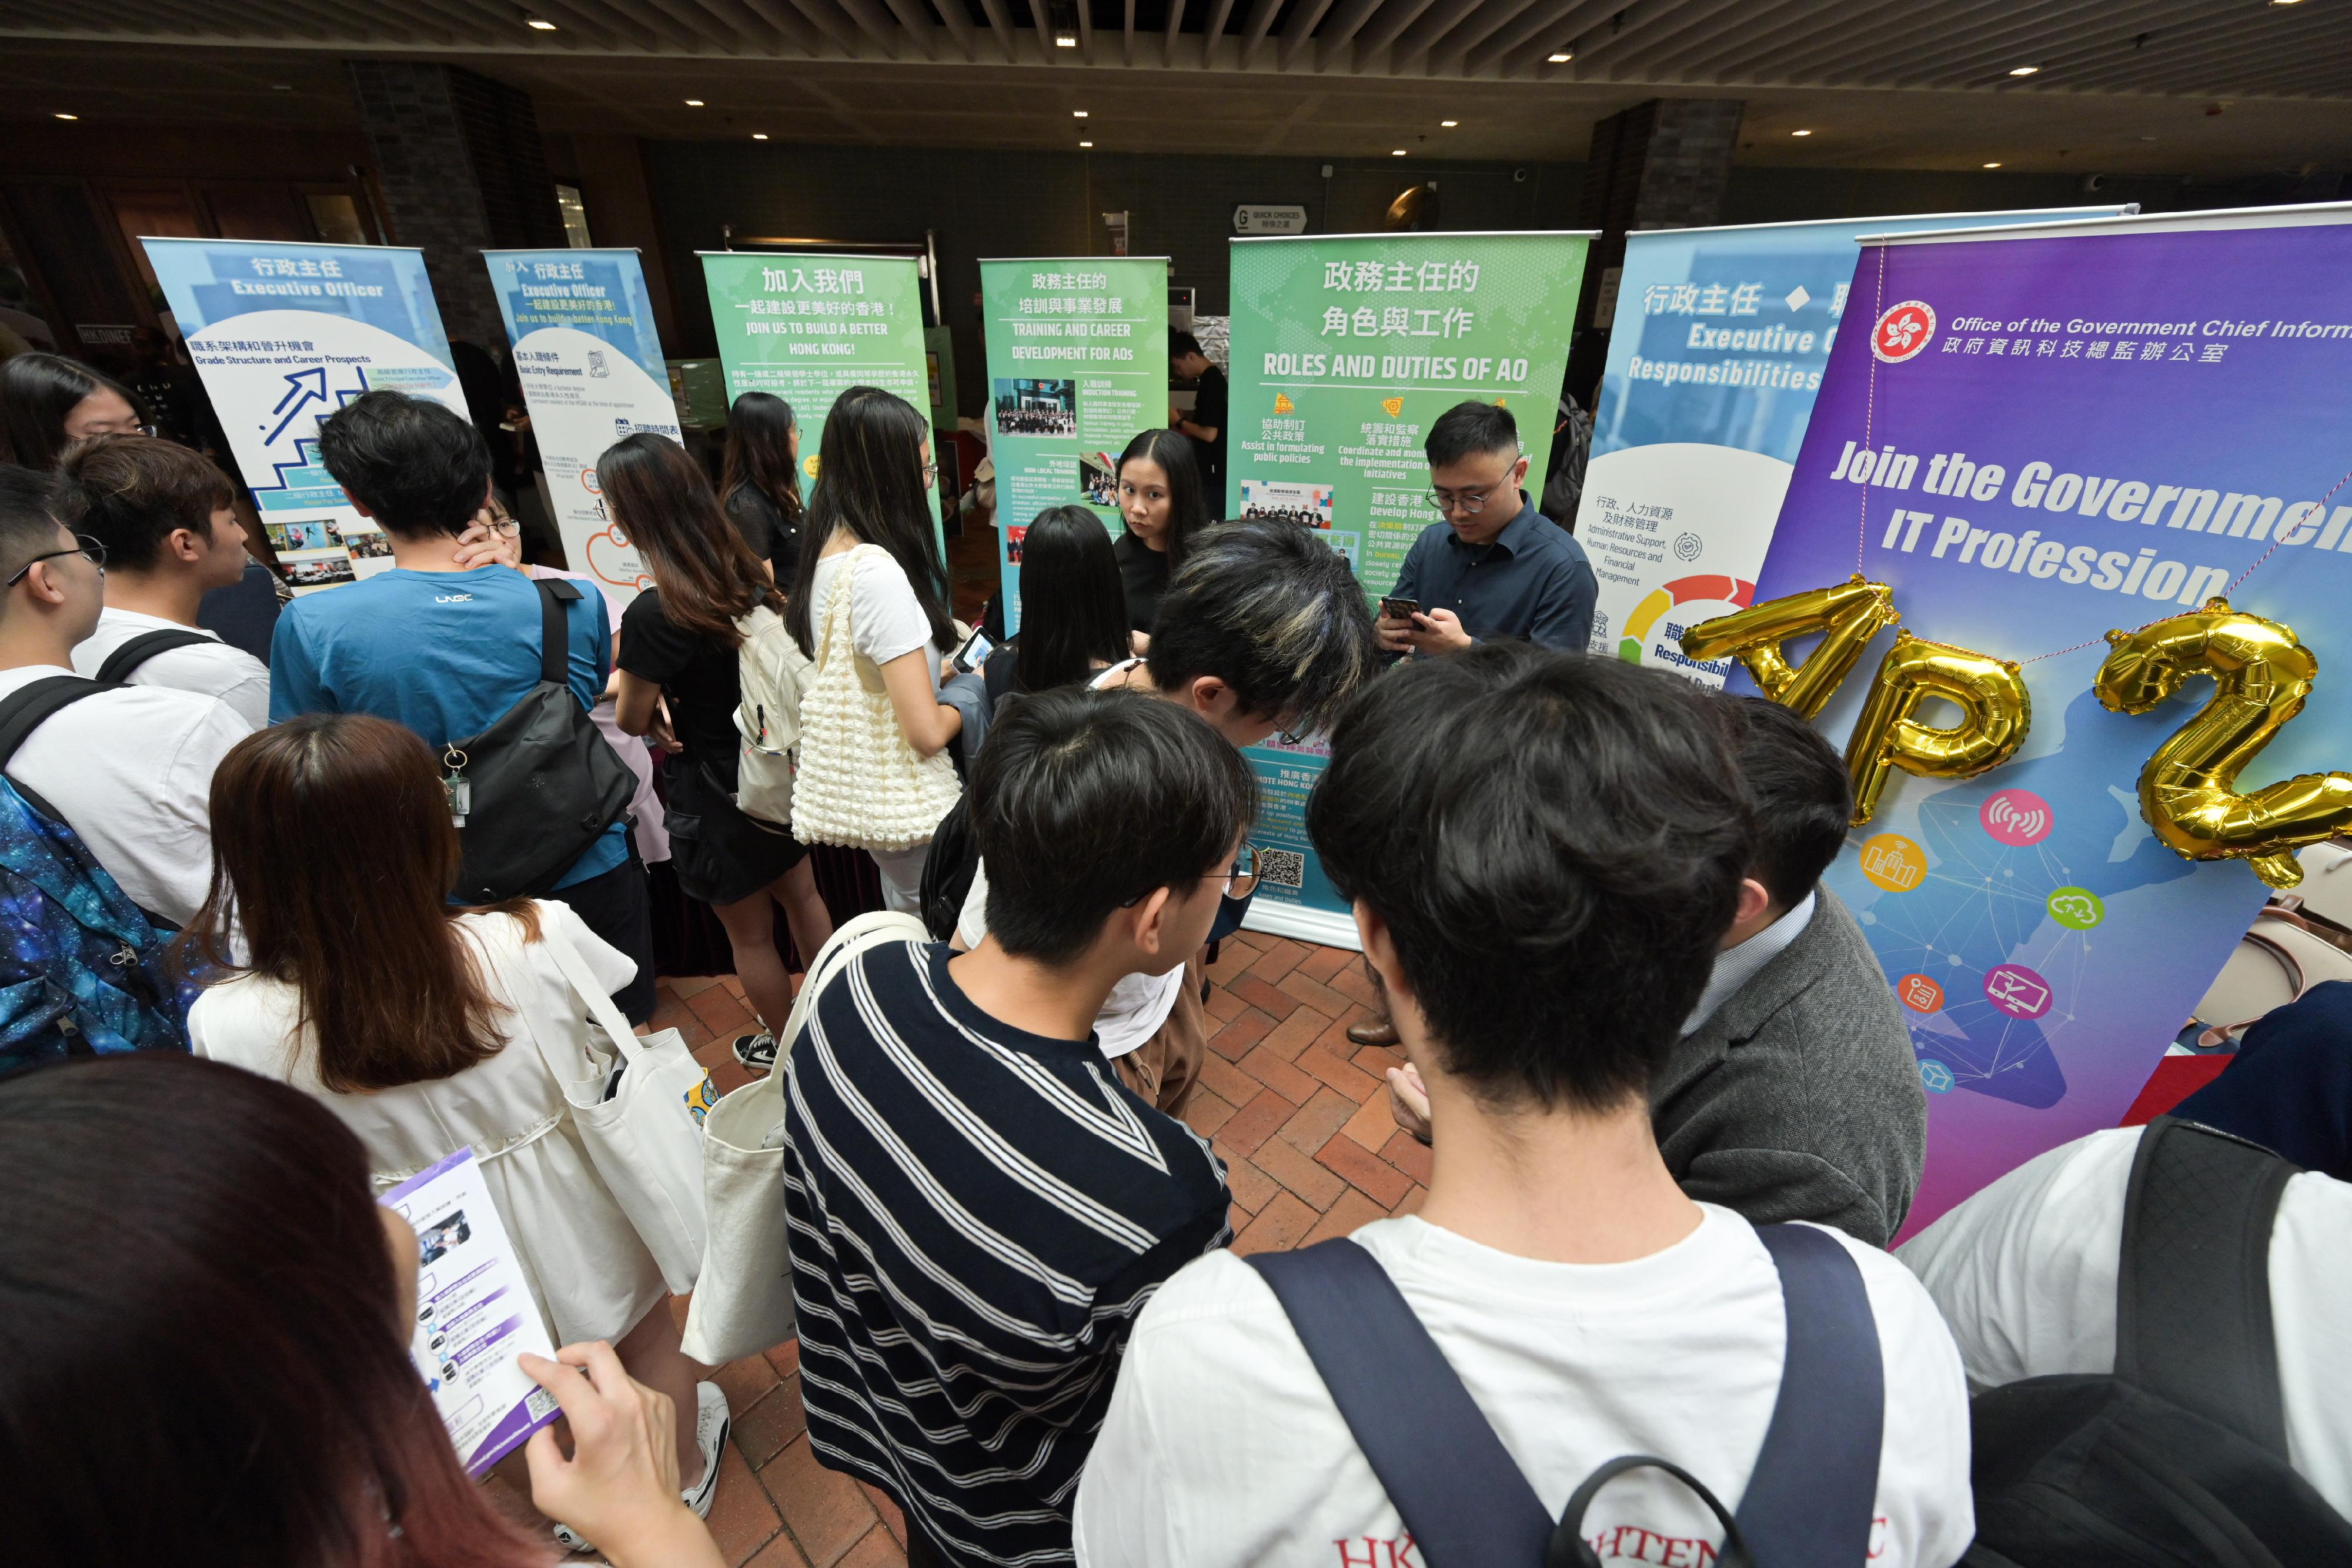 二十一个政策局和部门参与今日（九月十四日）在香港大学举行的政府职位招聘展览，让同学可多认识政府不同职系的工作，考虑政府为他们提供的不同就业机会。